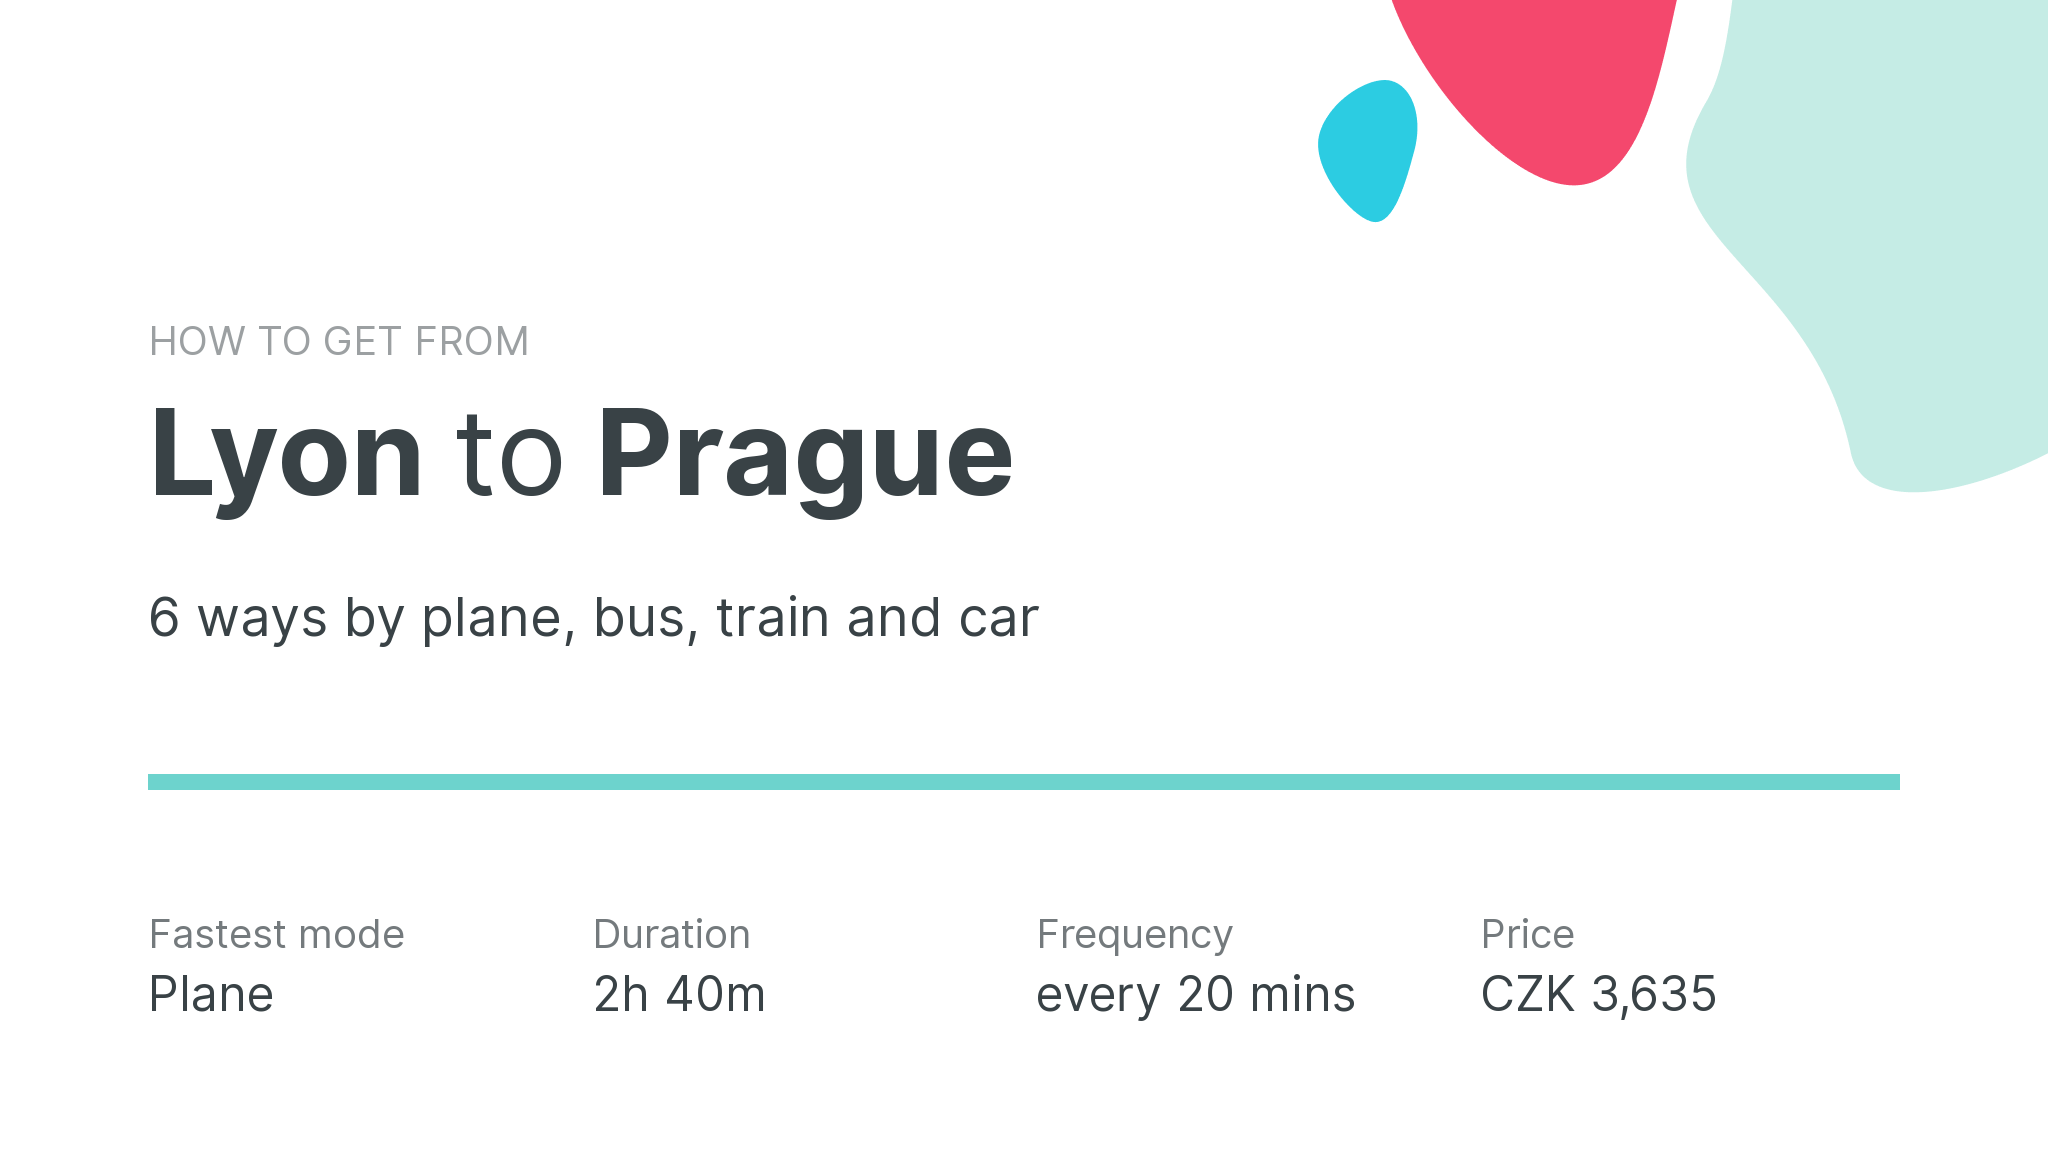 How do I get from Lyon to Prague